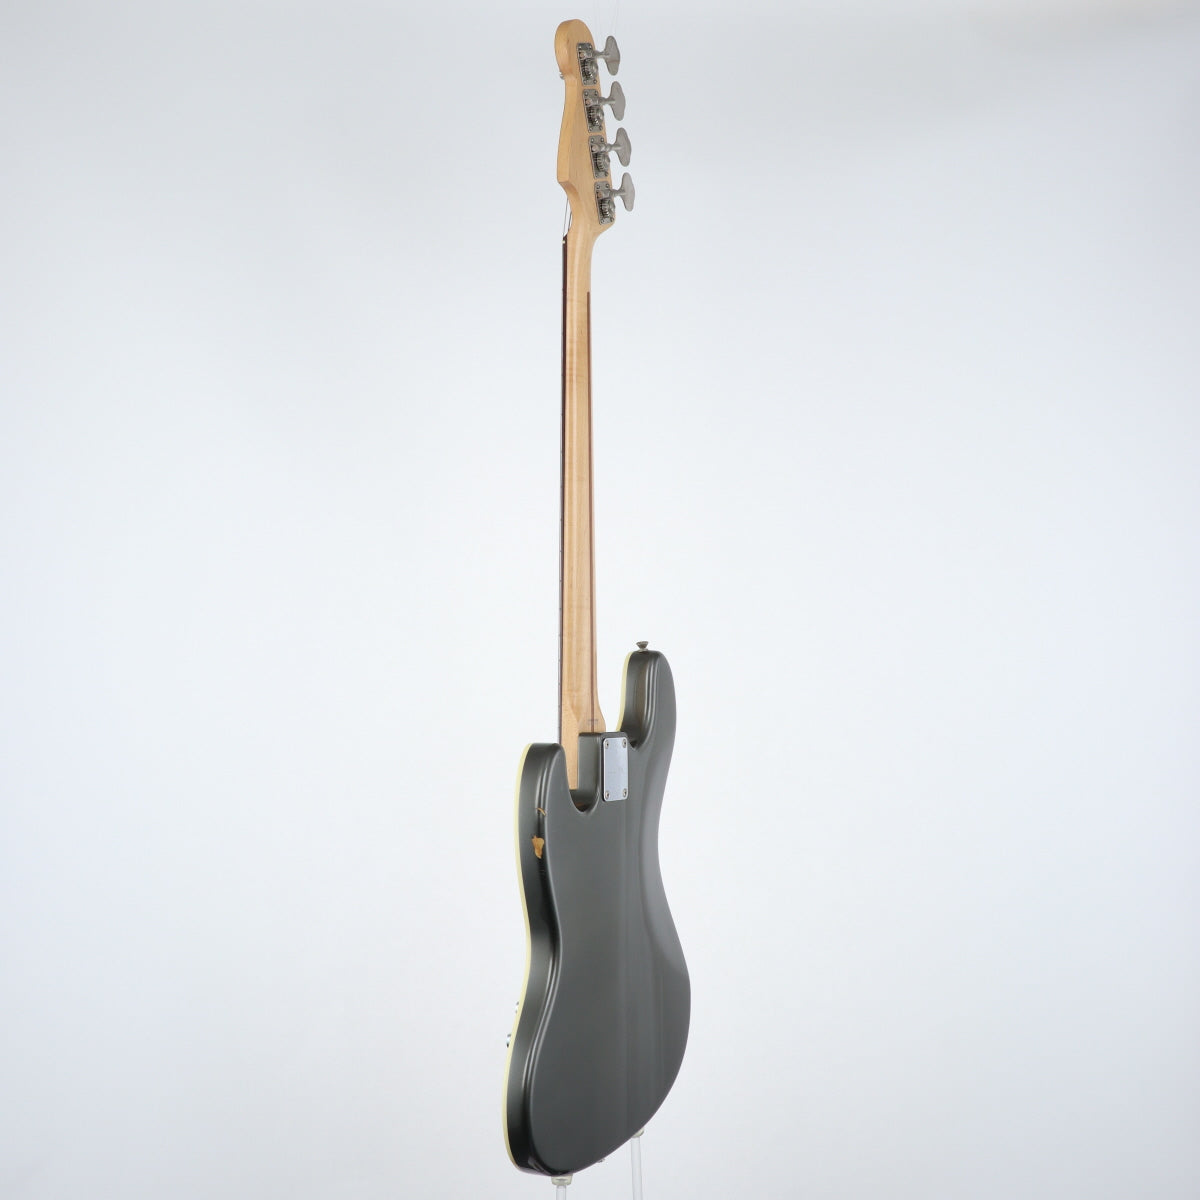 [SN CIJ R023257] USED Fender Japan Fender Japan / AJB-58 Dolphin Gray [20]